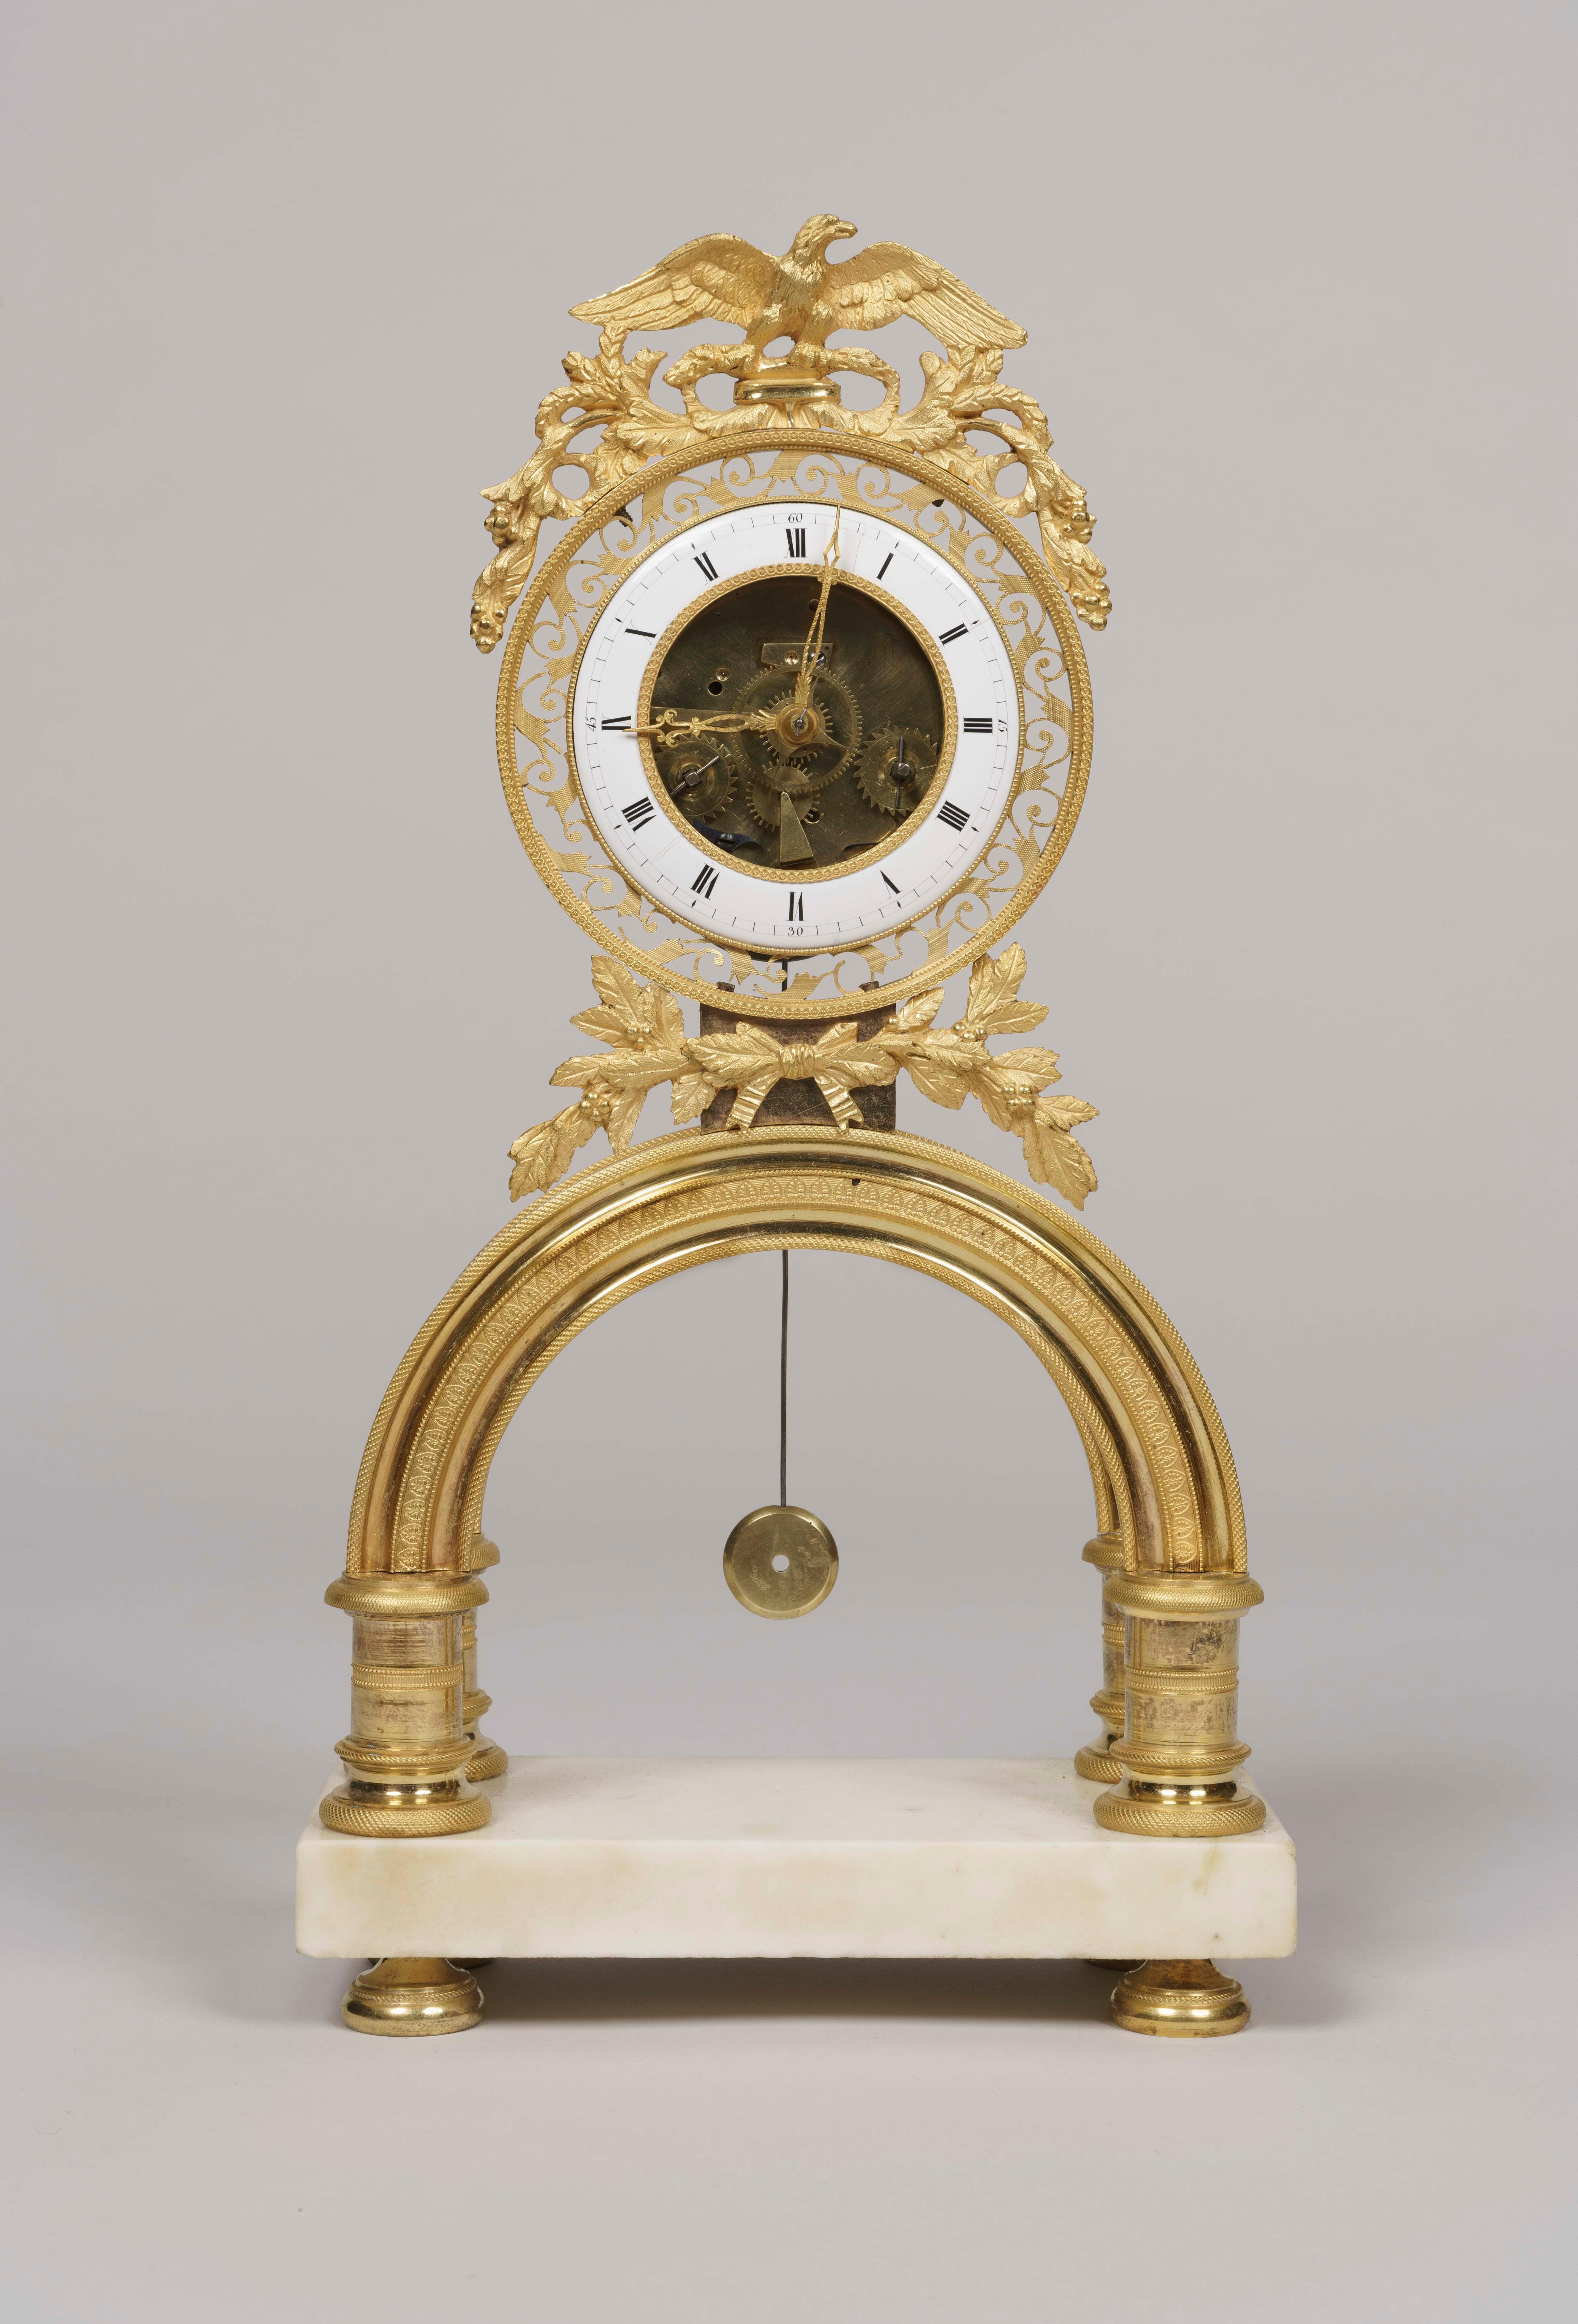 Eine symbolische Skelettuhr aus der Zeit des französischen Directoire.

Ein rechteckiger Sockel aus Carrara-Marmor mit Bronzefüßen mit Rändeldekoration trägt einen Bogen aus Ormolu, über dem sich die runde, mit Girlanden geschmückte Uhr befindet.